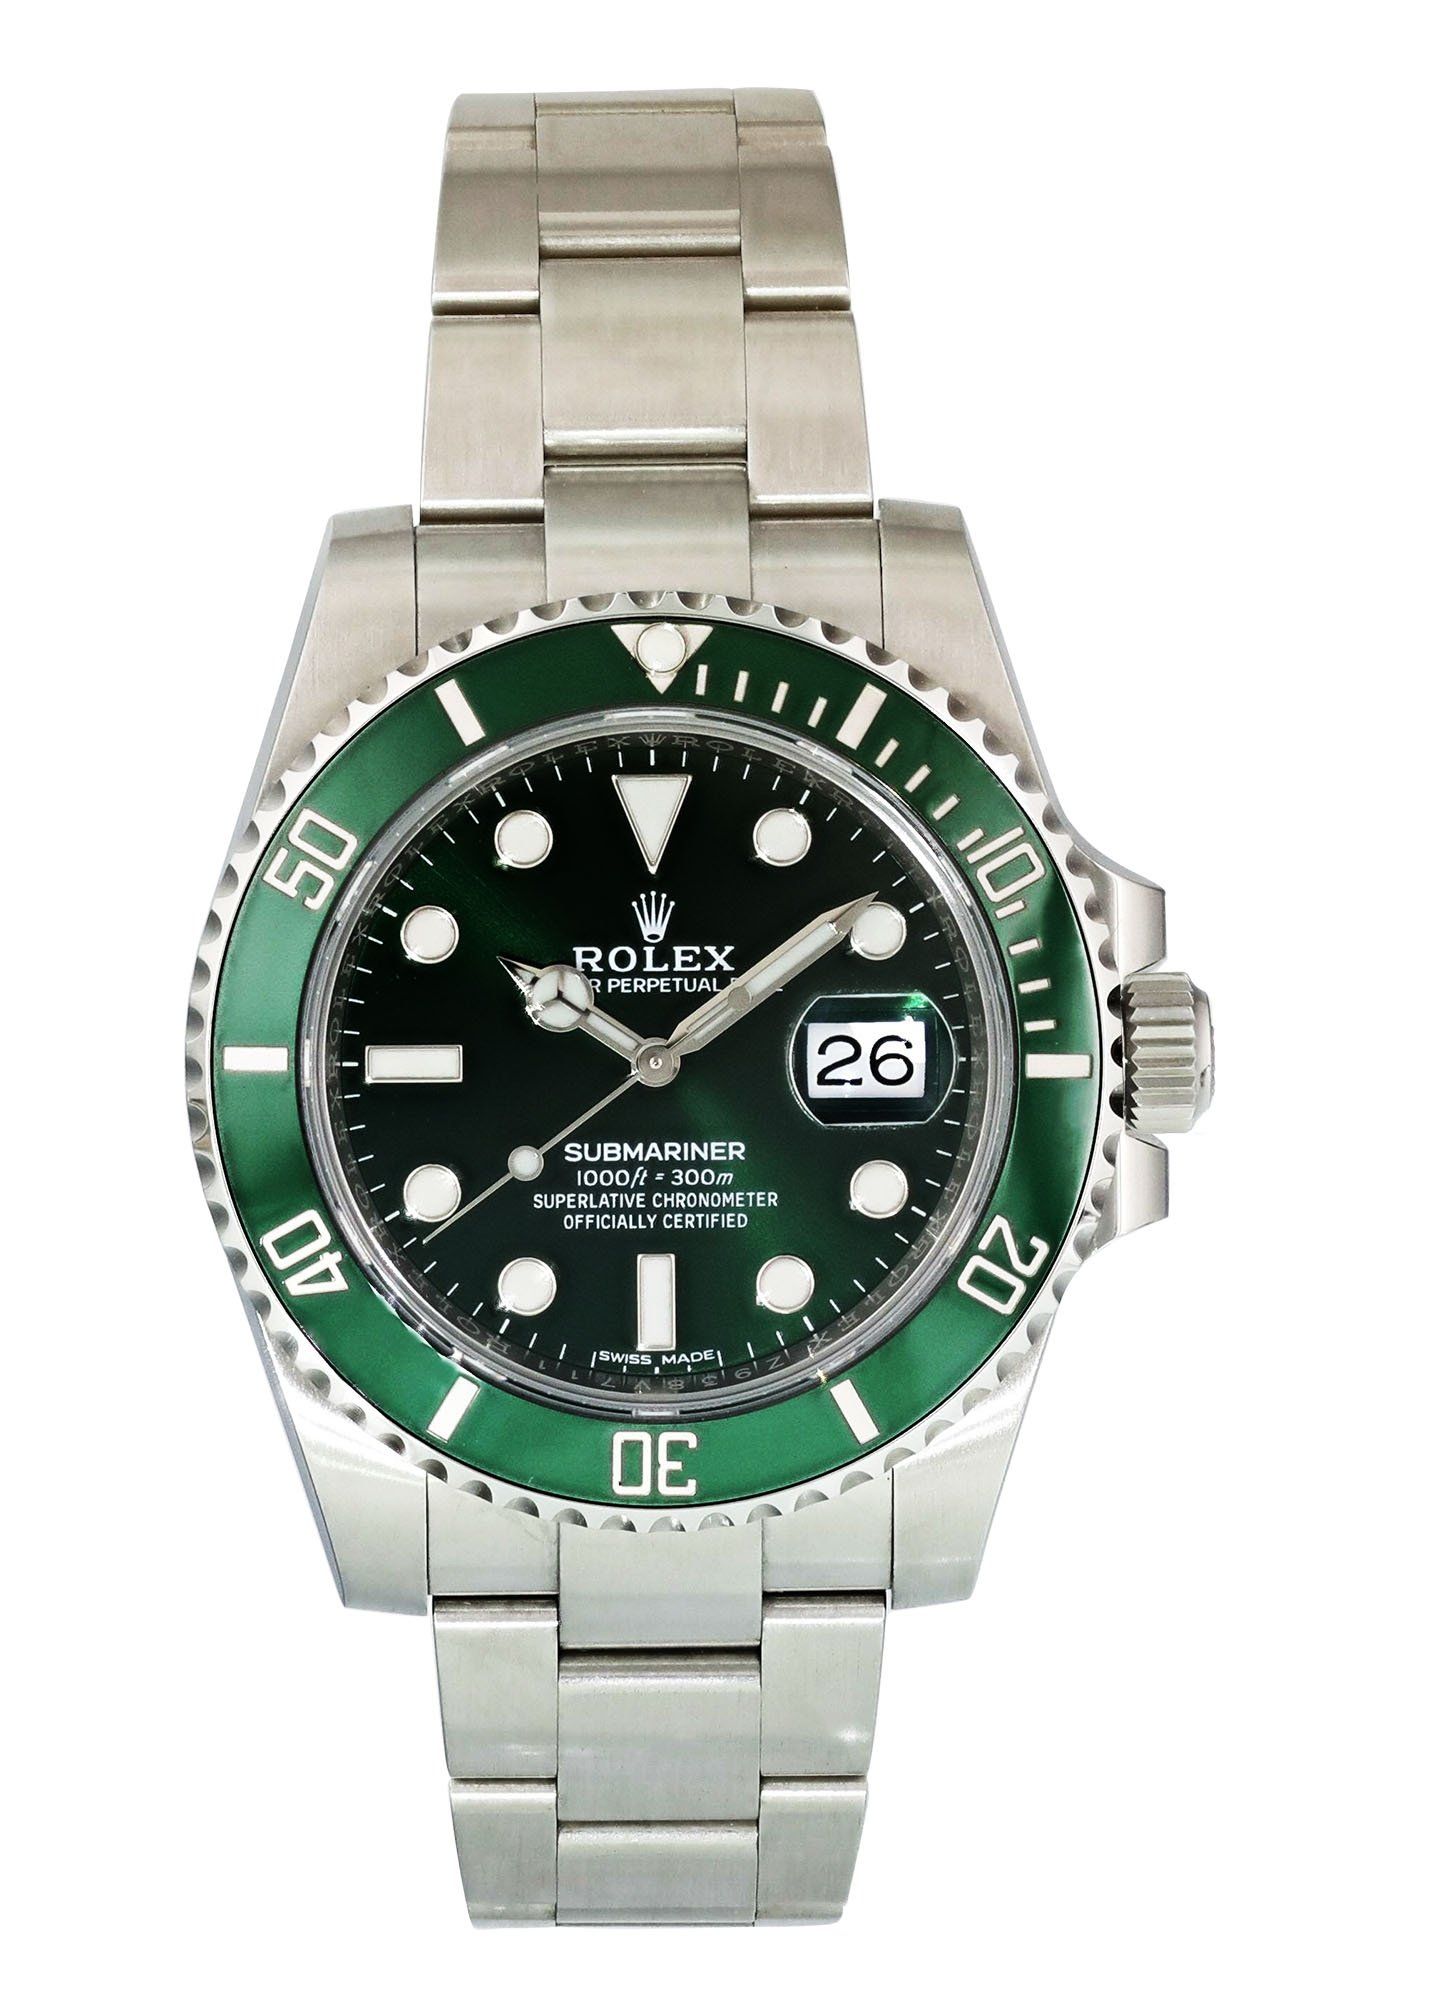 Rolex Submariner Men's Stainless Steel Watch 116610 LV Hulk  Mens watches  stainless steel, Rolex submariner, Stainless steel watch